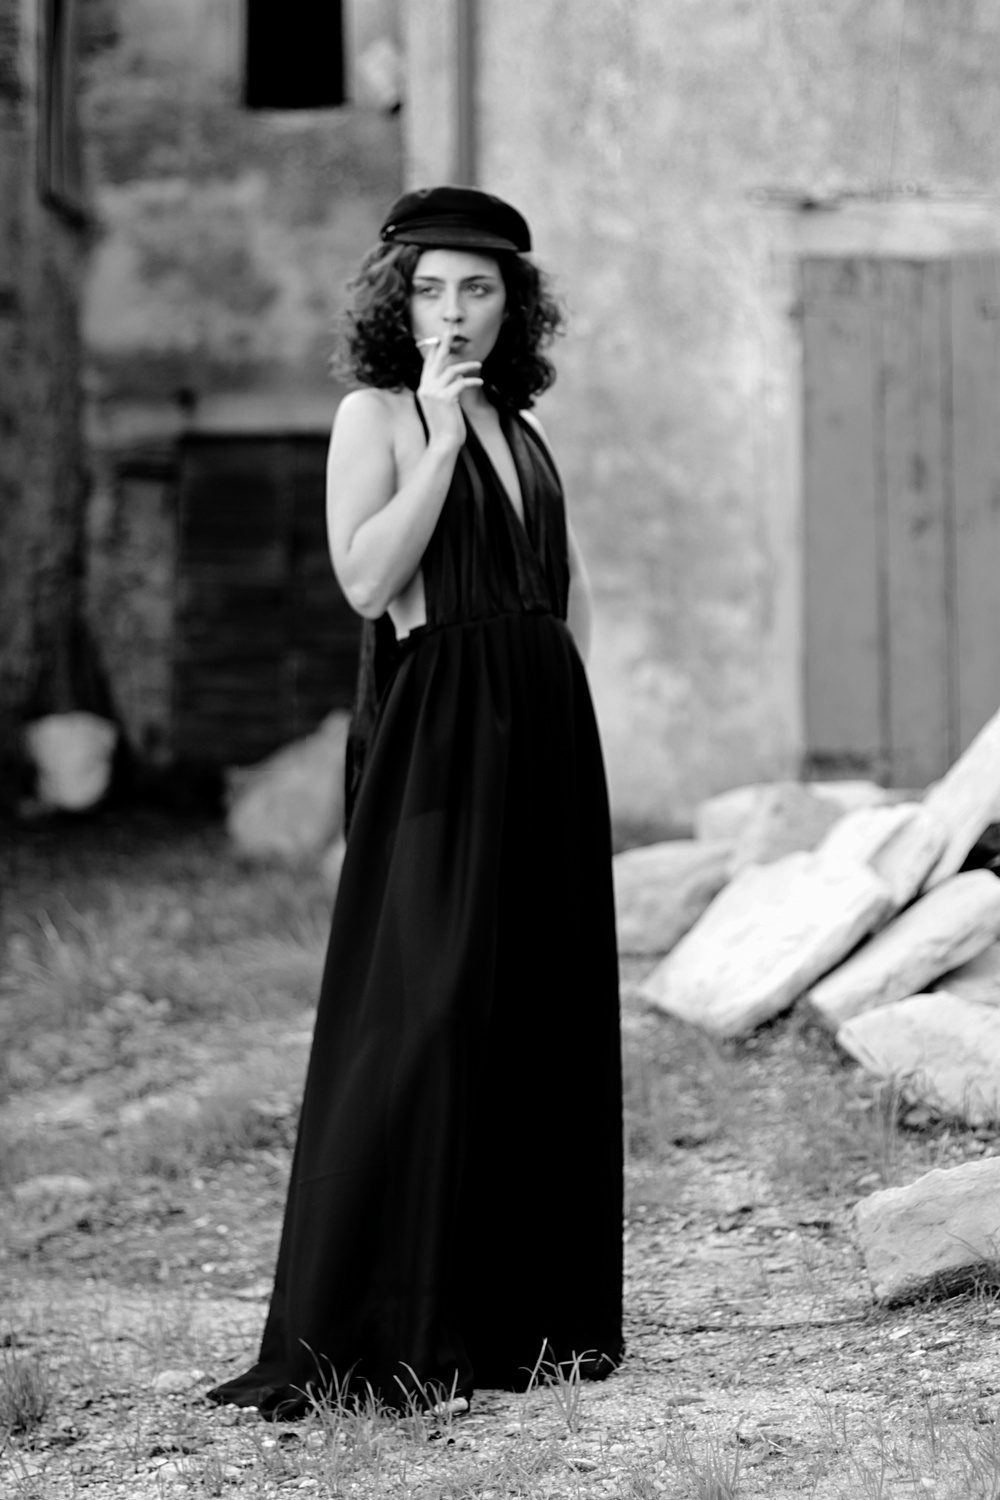 Ritratto in bianco e nero di ragazza con abito lungo da sera e sigaretta, fotografia analogica e vintage